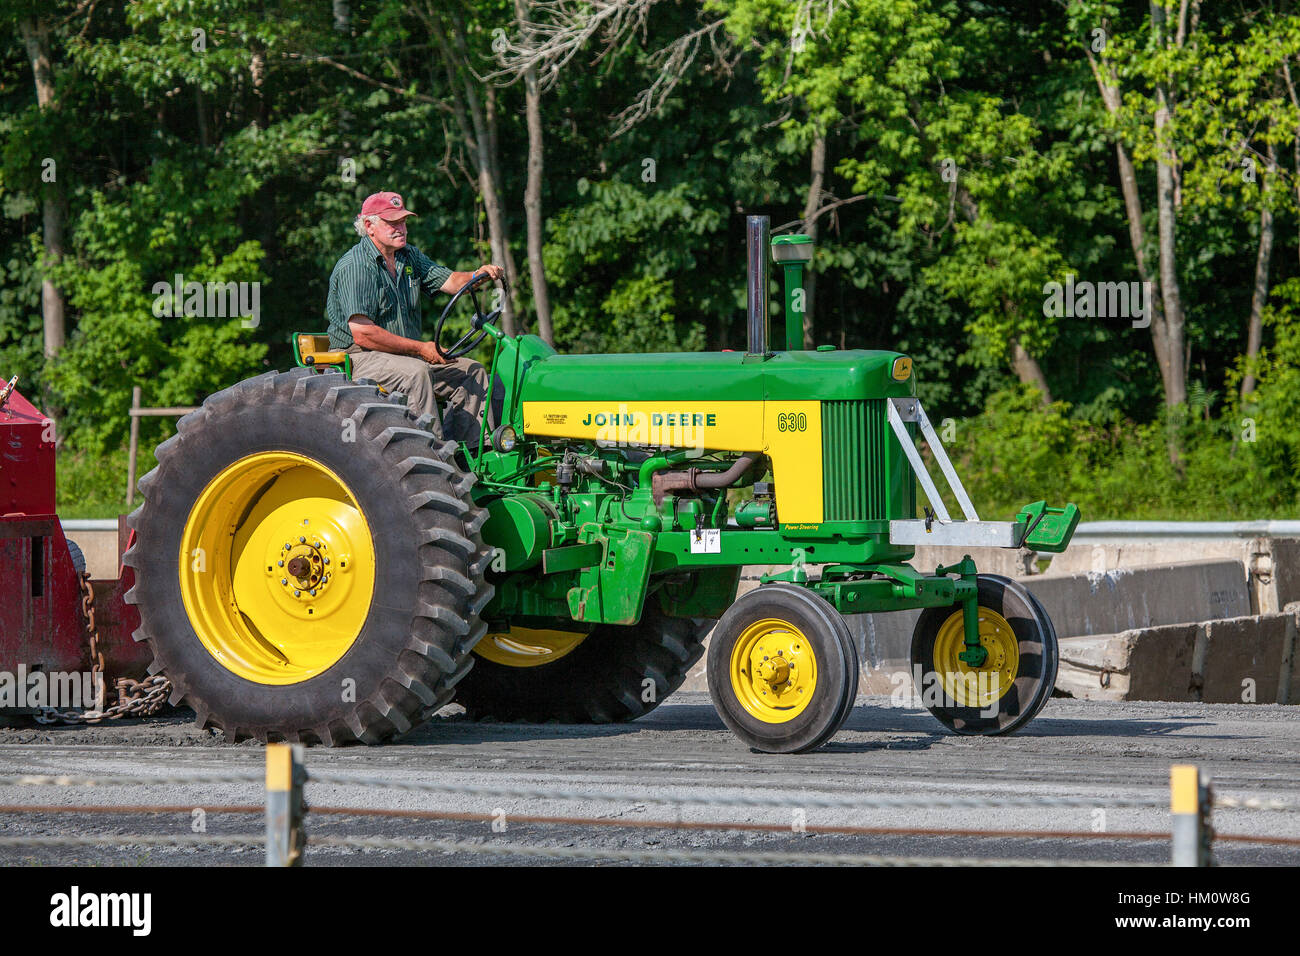 Un granjero conduce su tractor John Deere modelo 630 en el concurso tirando en el Connecticut Valley Fair en Bradford, VT, ESTADOS UNIDOS. Foto de stock